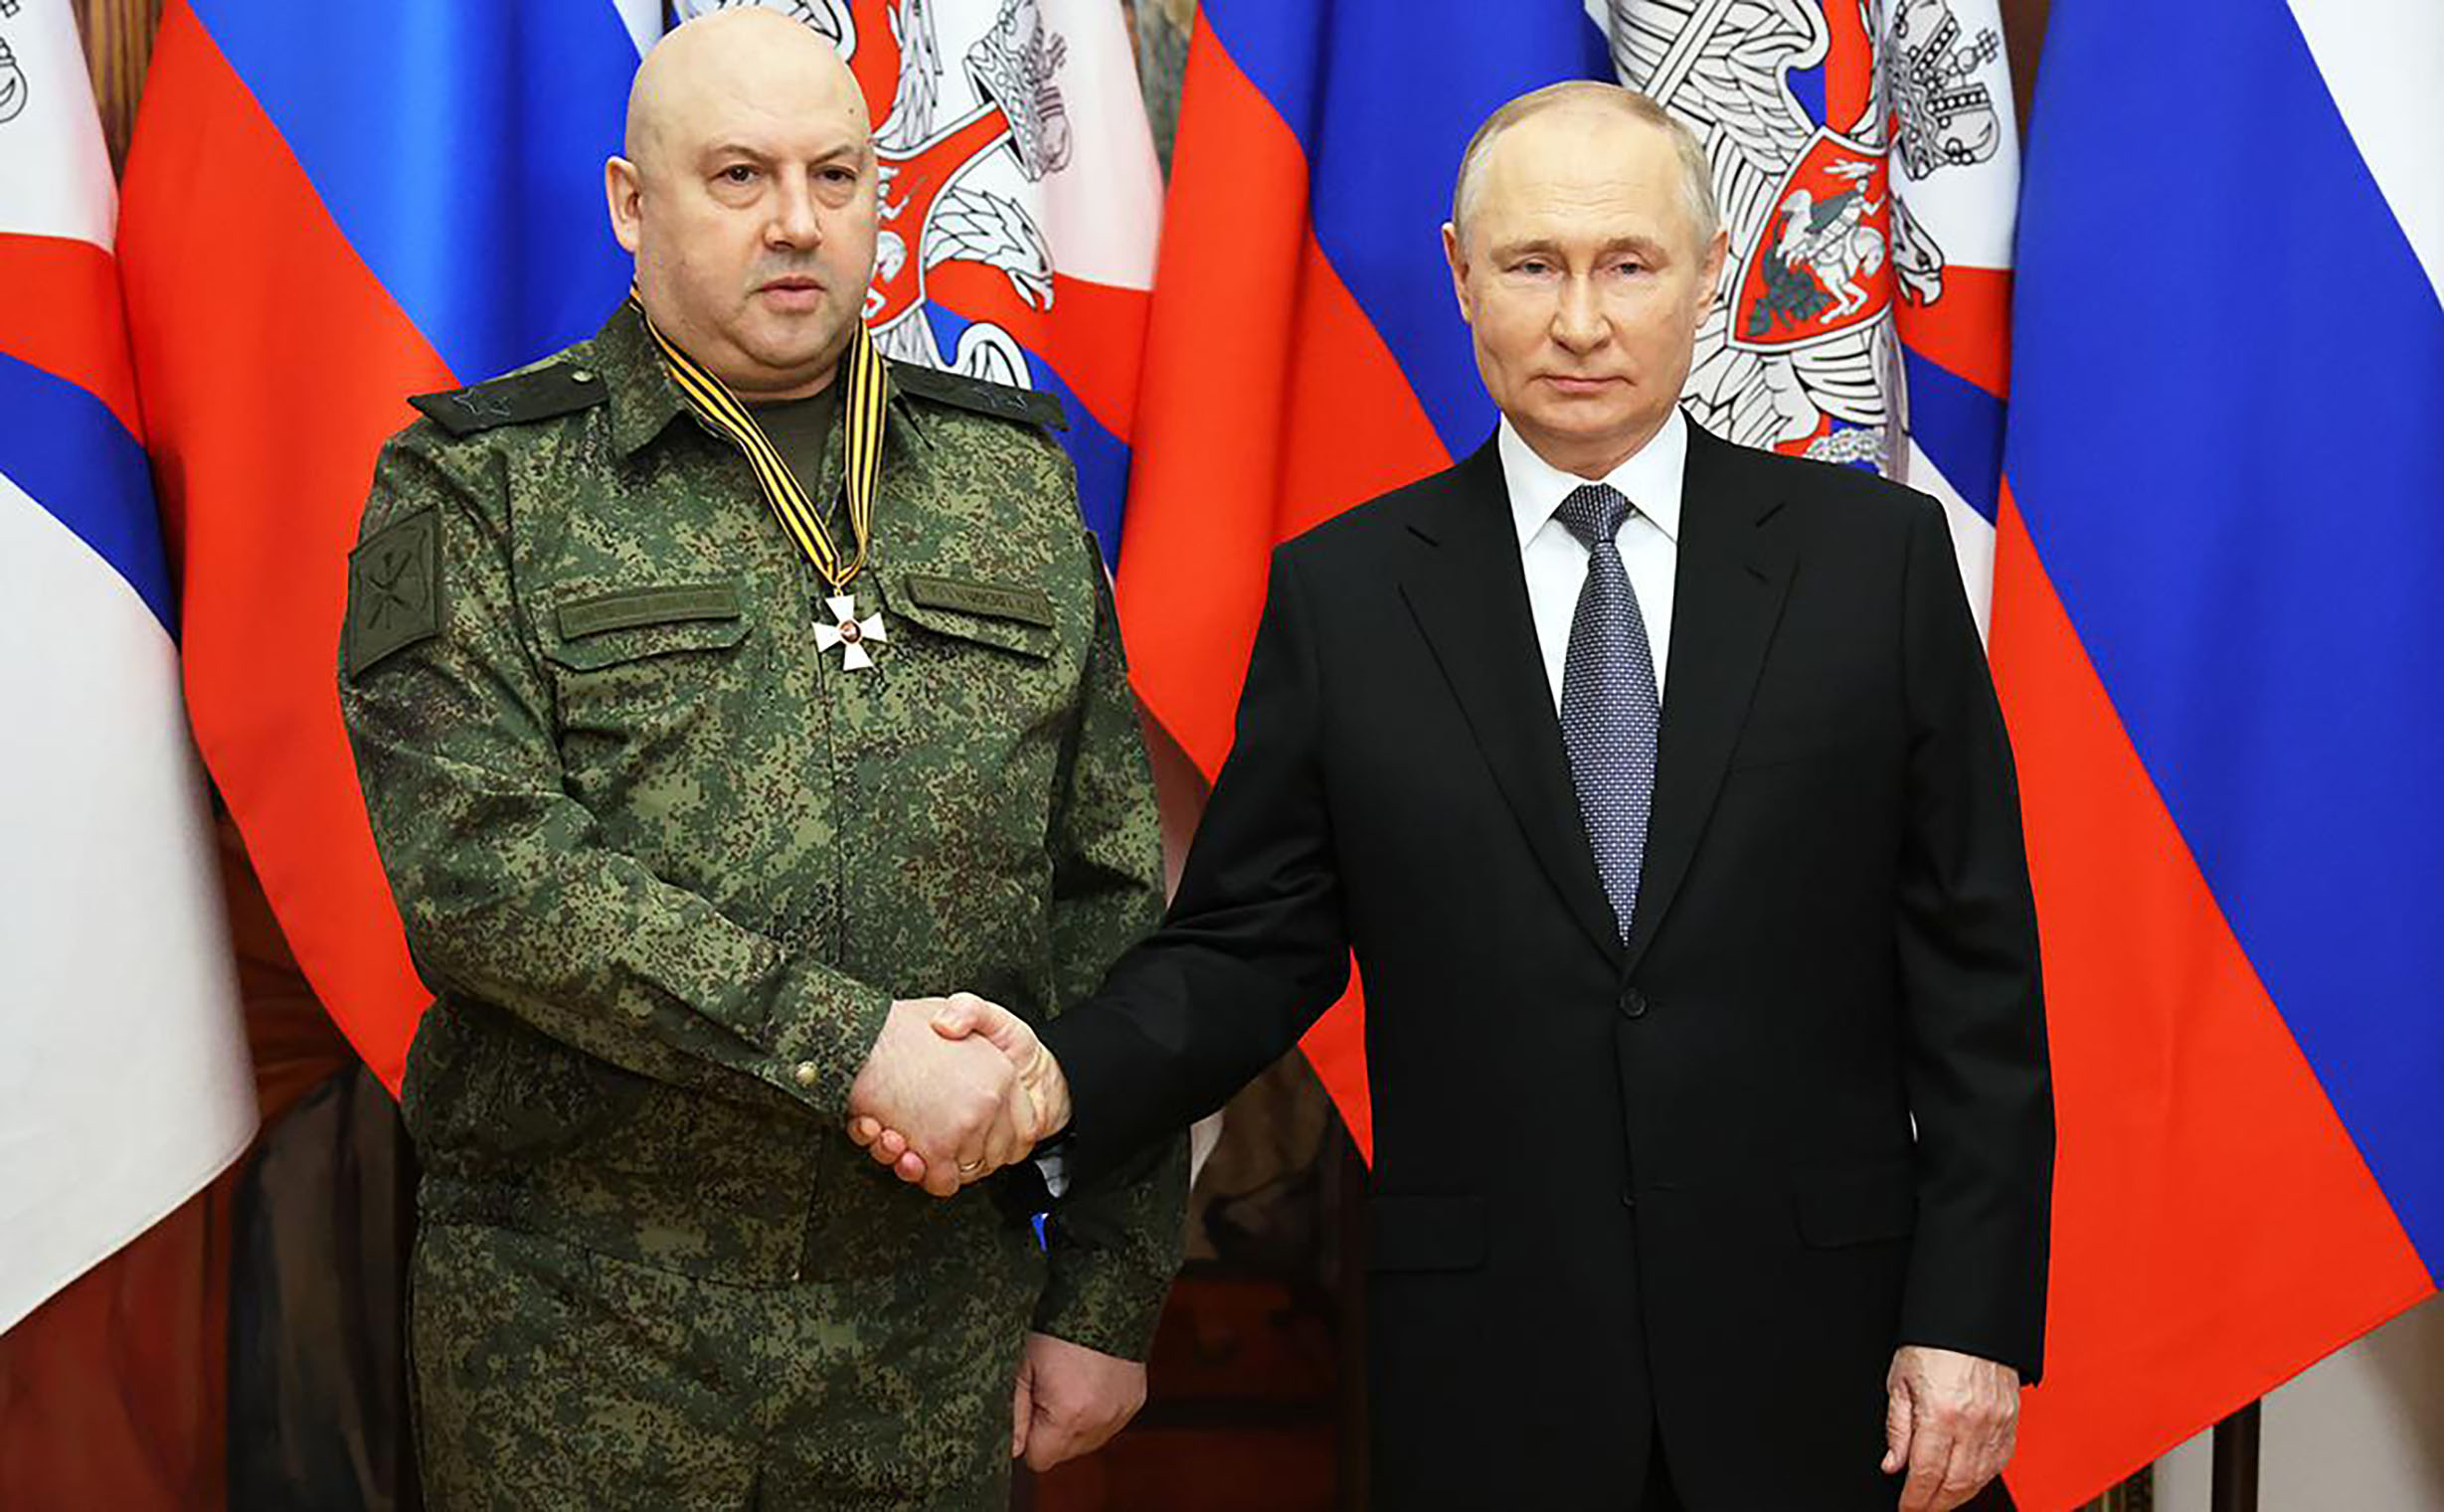 Putin ernannte im Oktober seinen „General Armageddon“, um die Kontrolle über den Ukraine-Krieg zu übernehmen